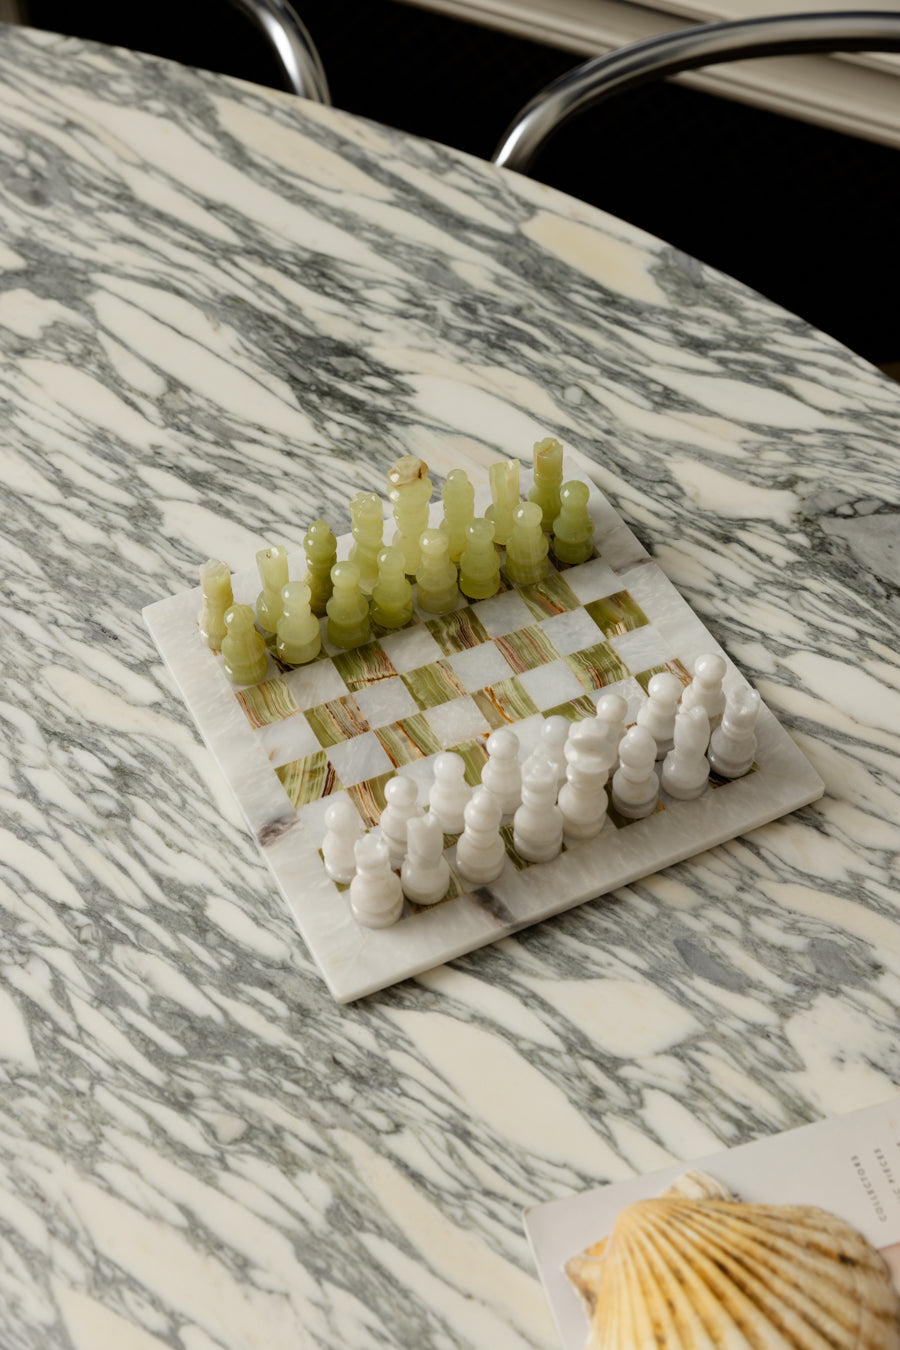 White Carrara Marble & Tiger Onyx Chess Set